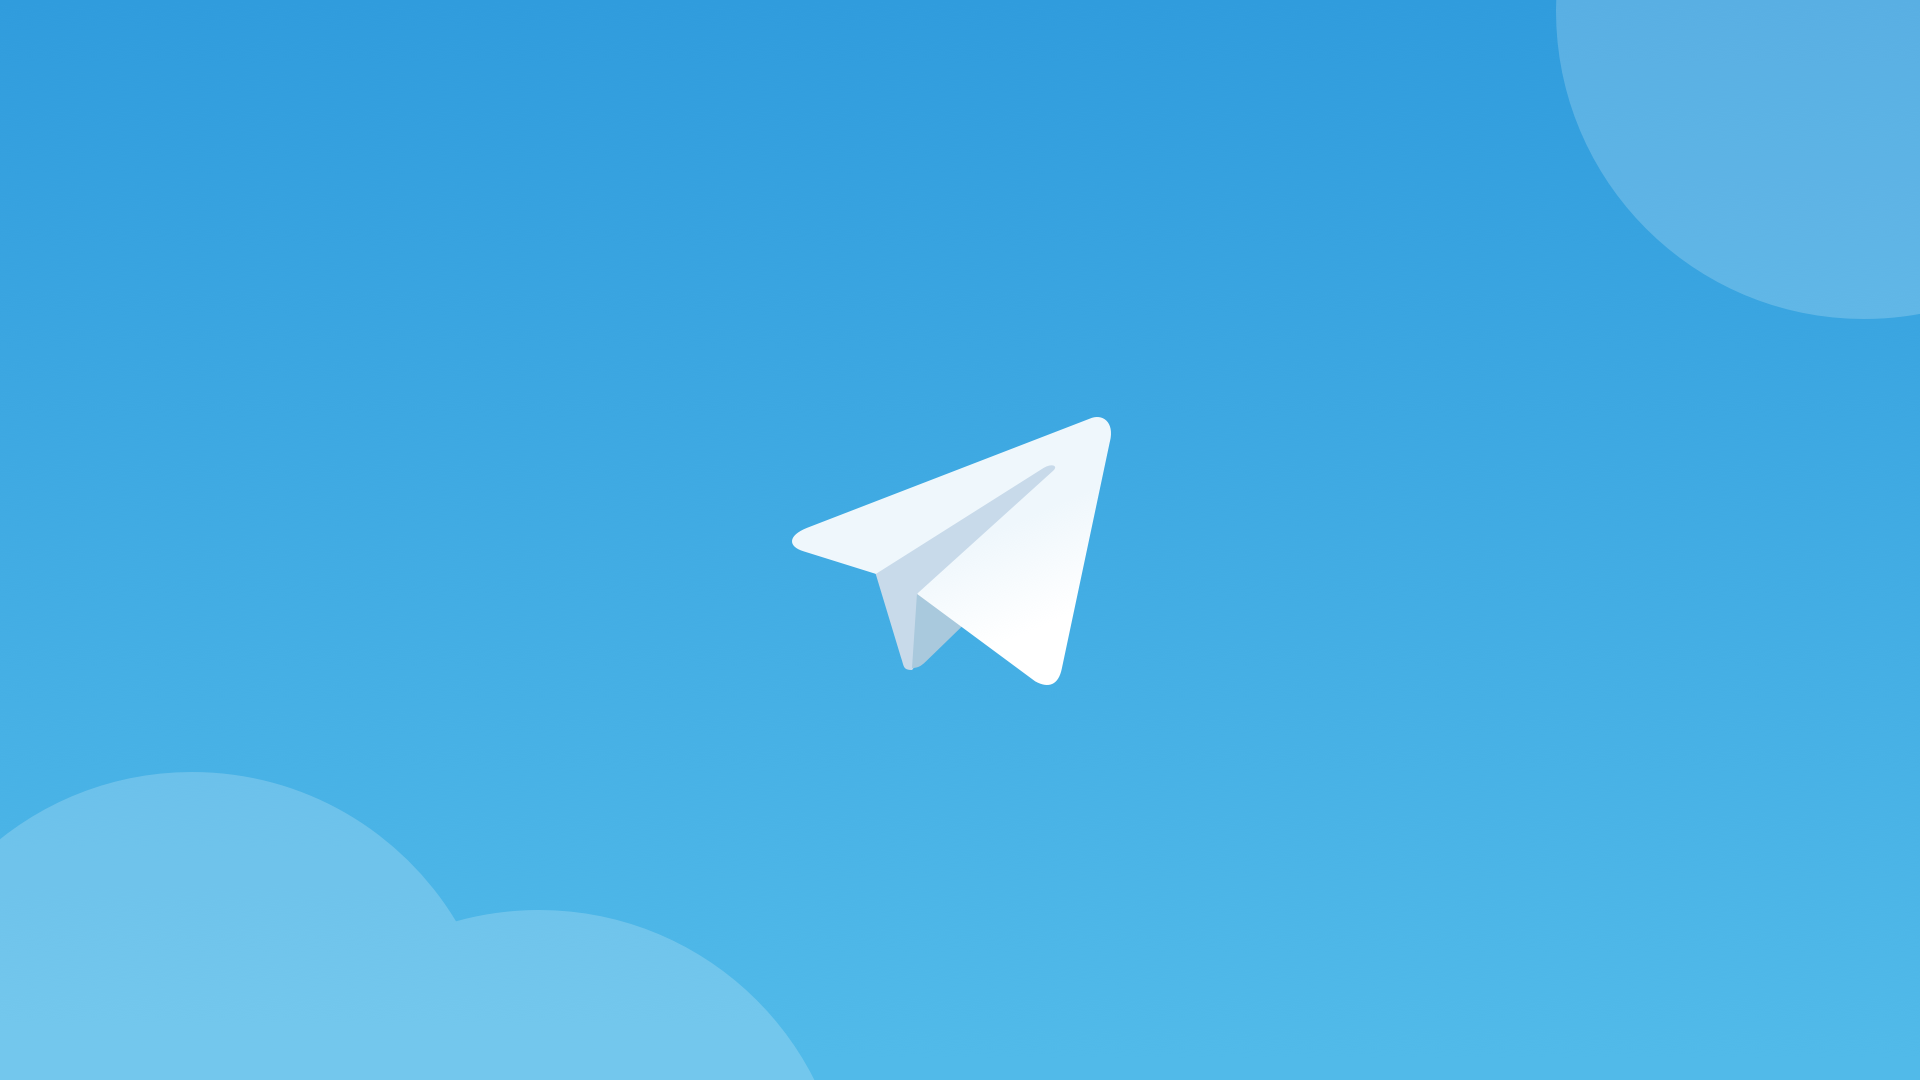 End-to-end κρυπτογραφημένες βιντεοκλήσεις προσφέρει πλέον το Telegram